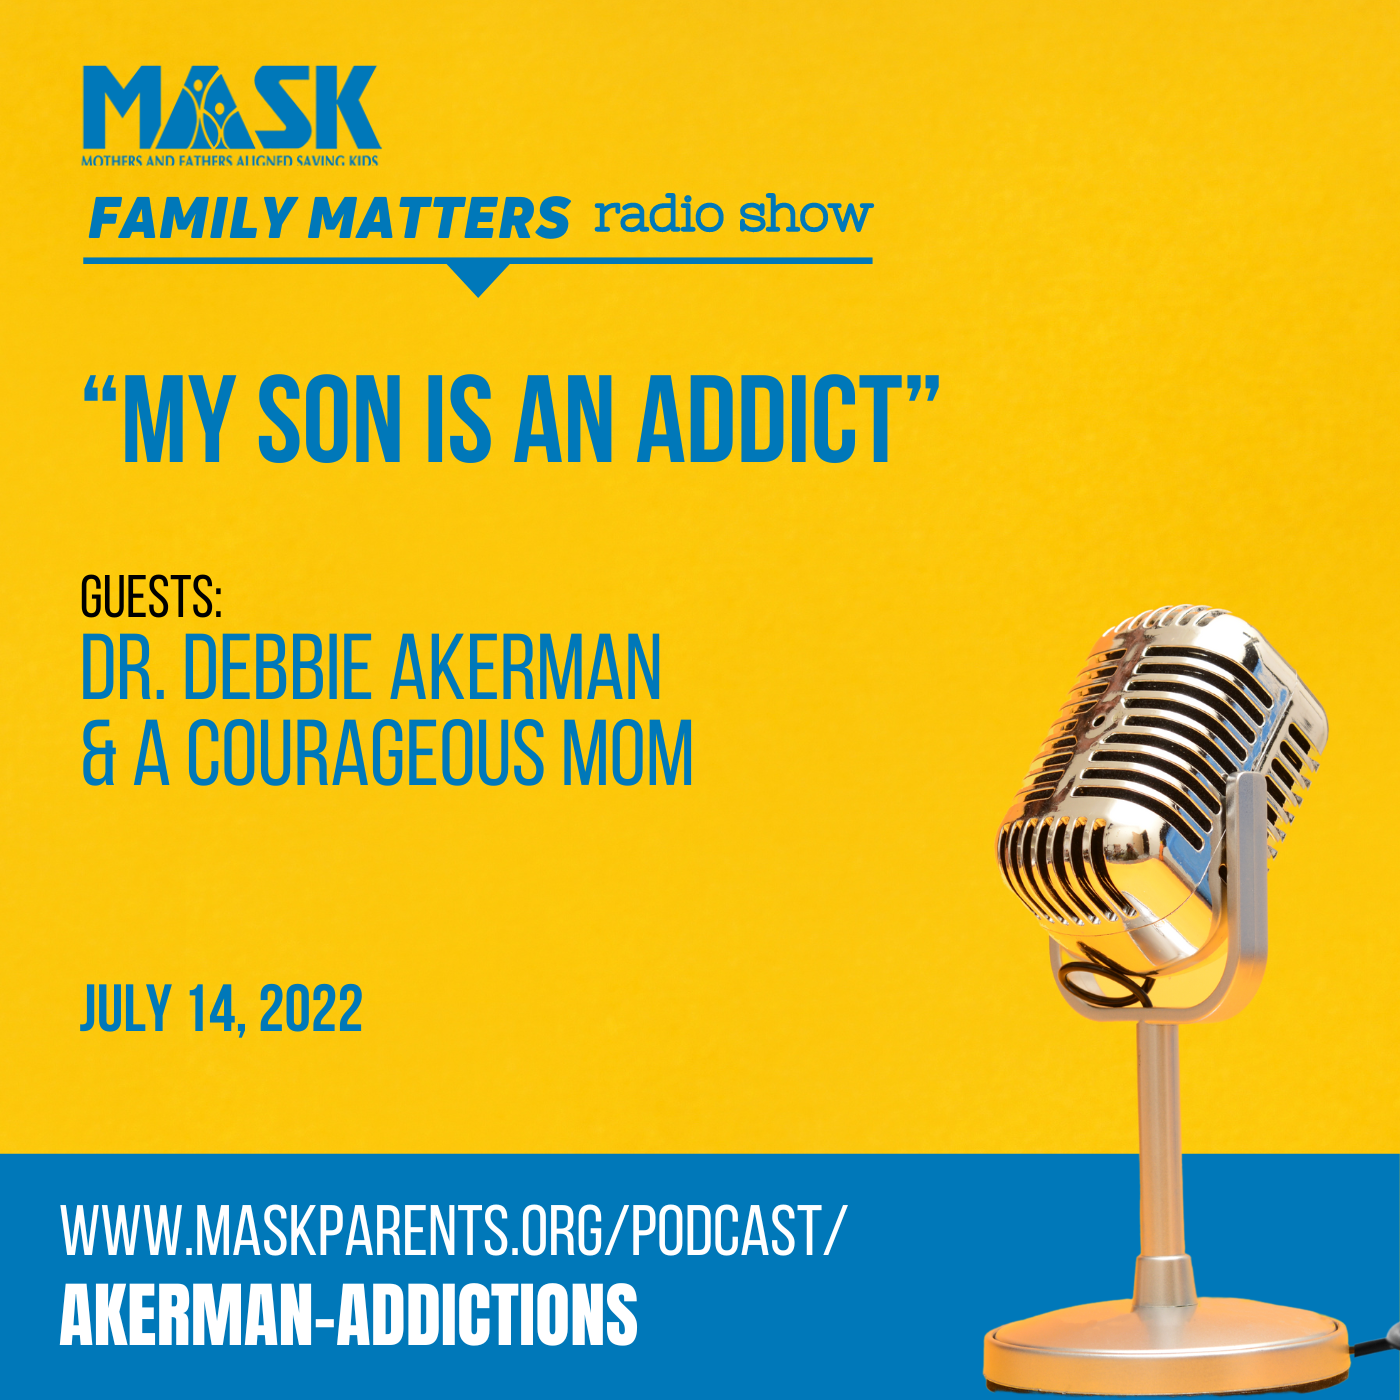 “My son is an addict”